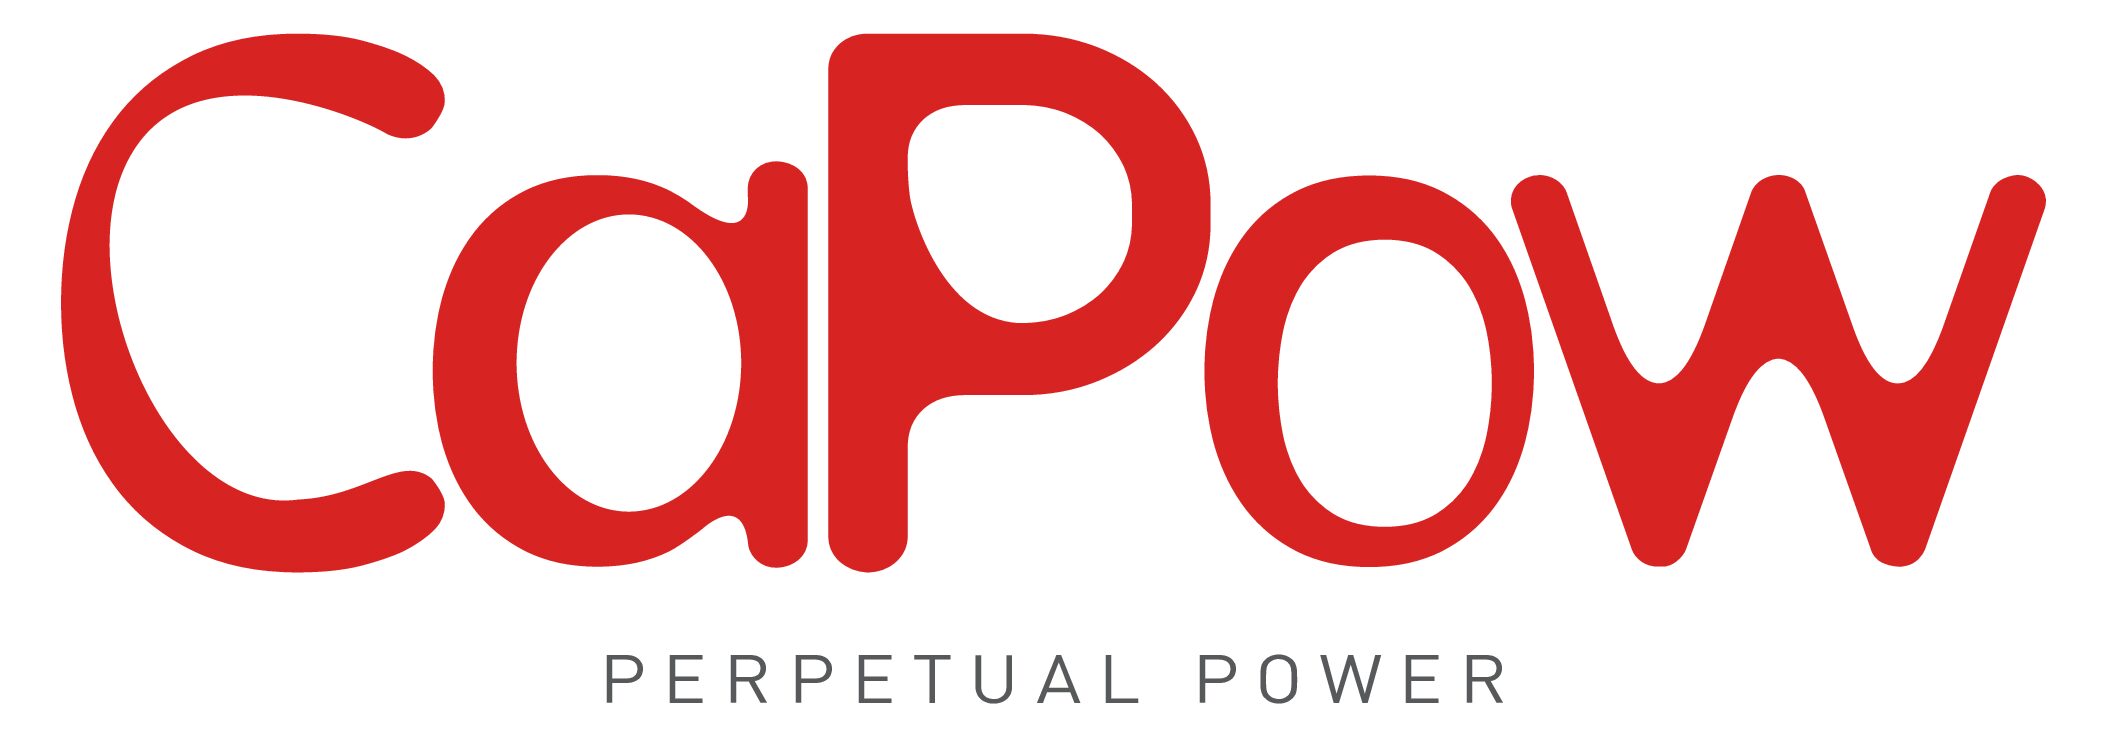 Capow-logo pdf